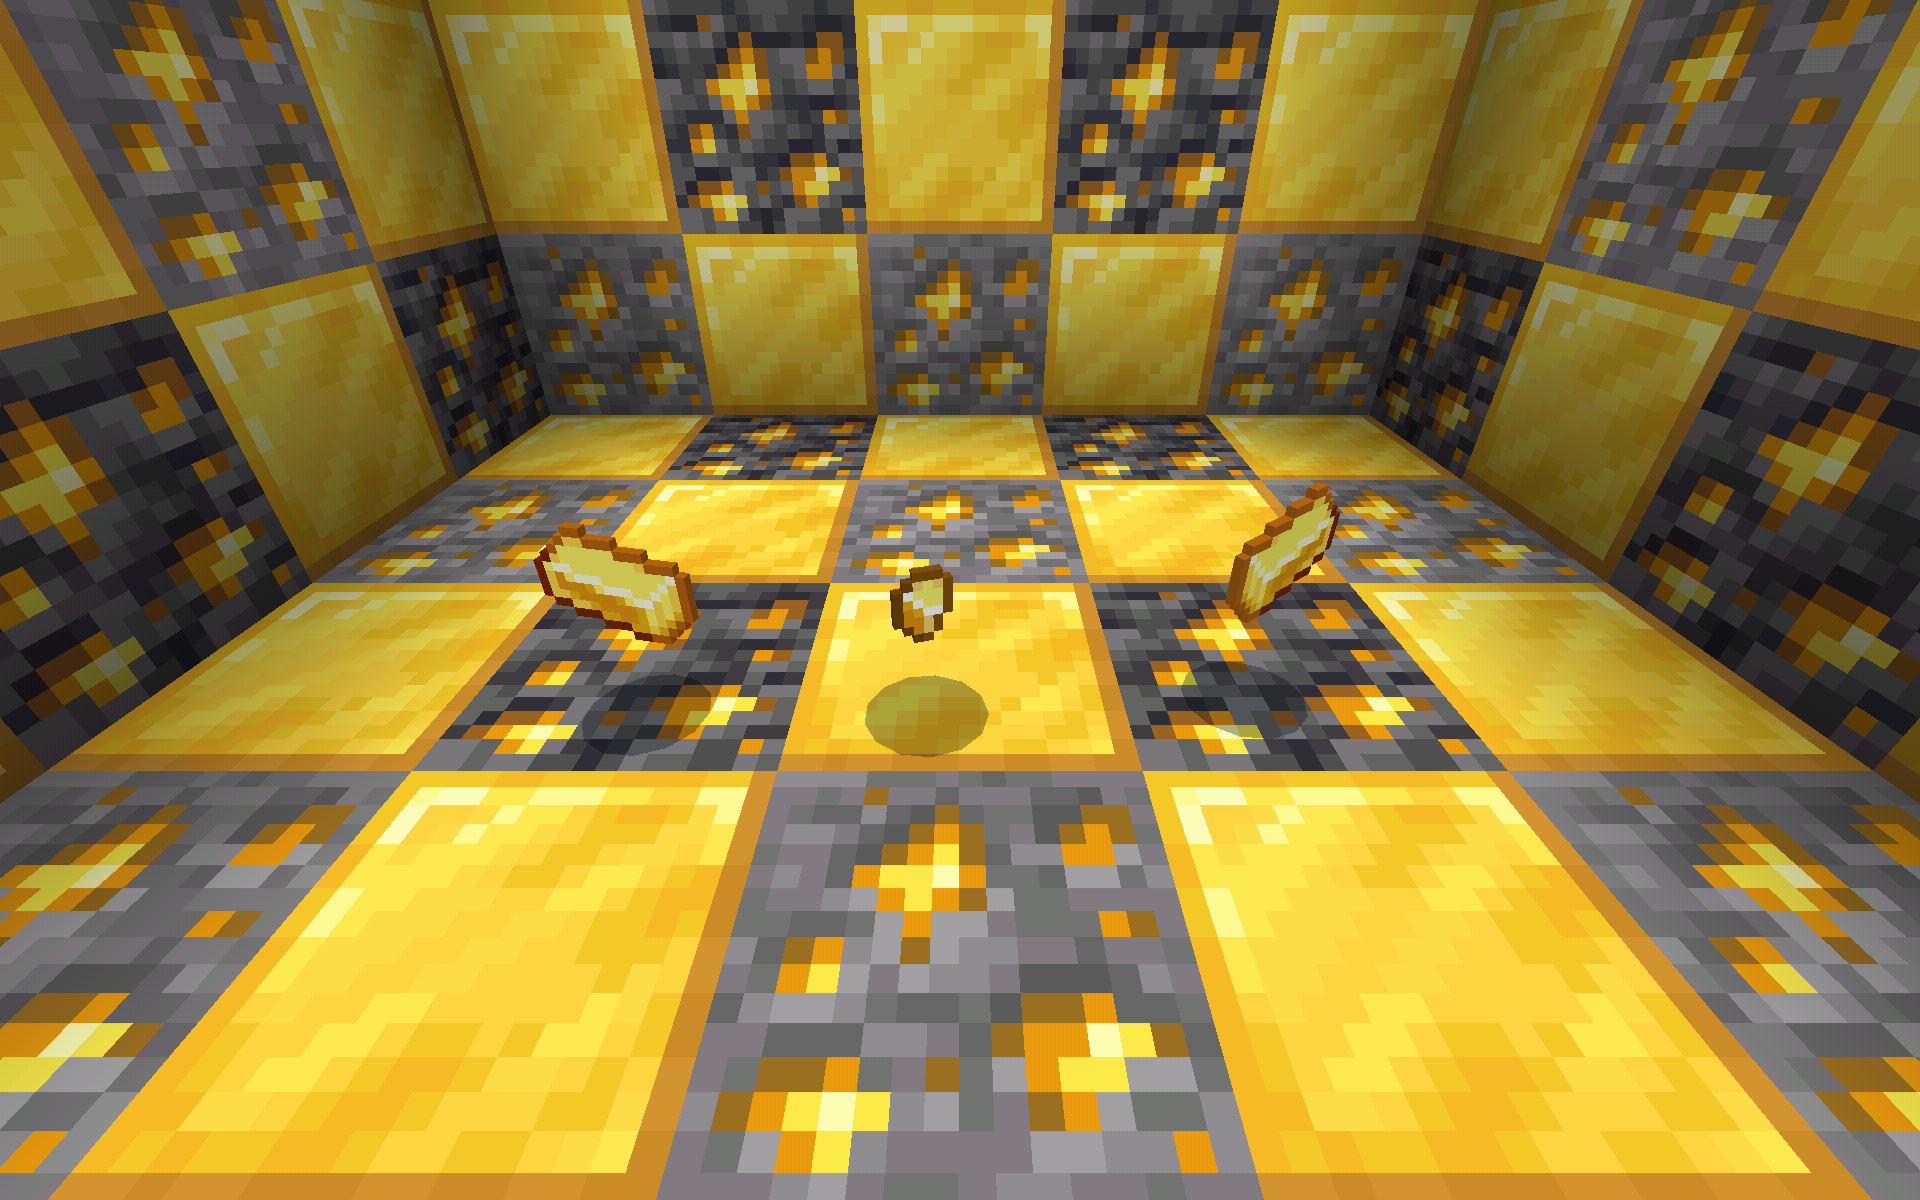 minecraft gold nugget